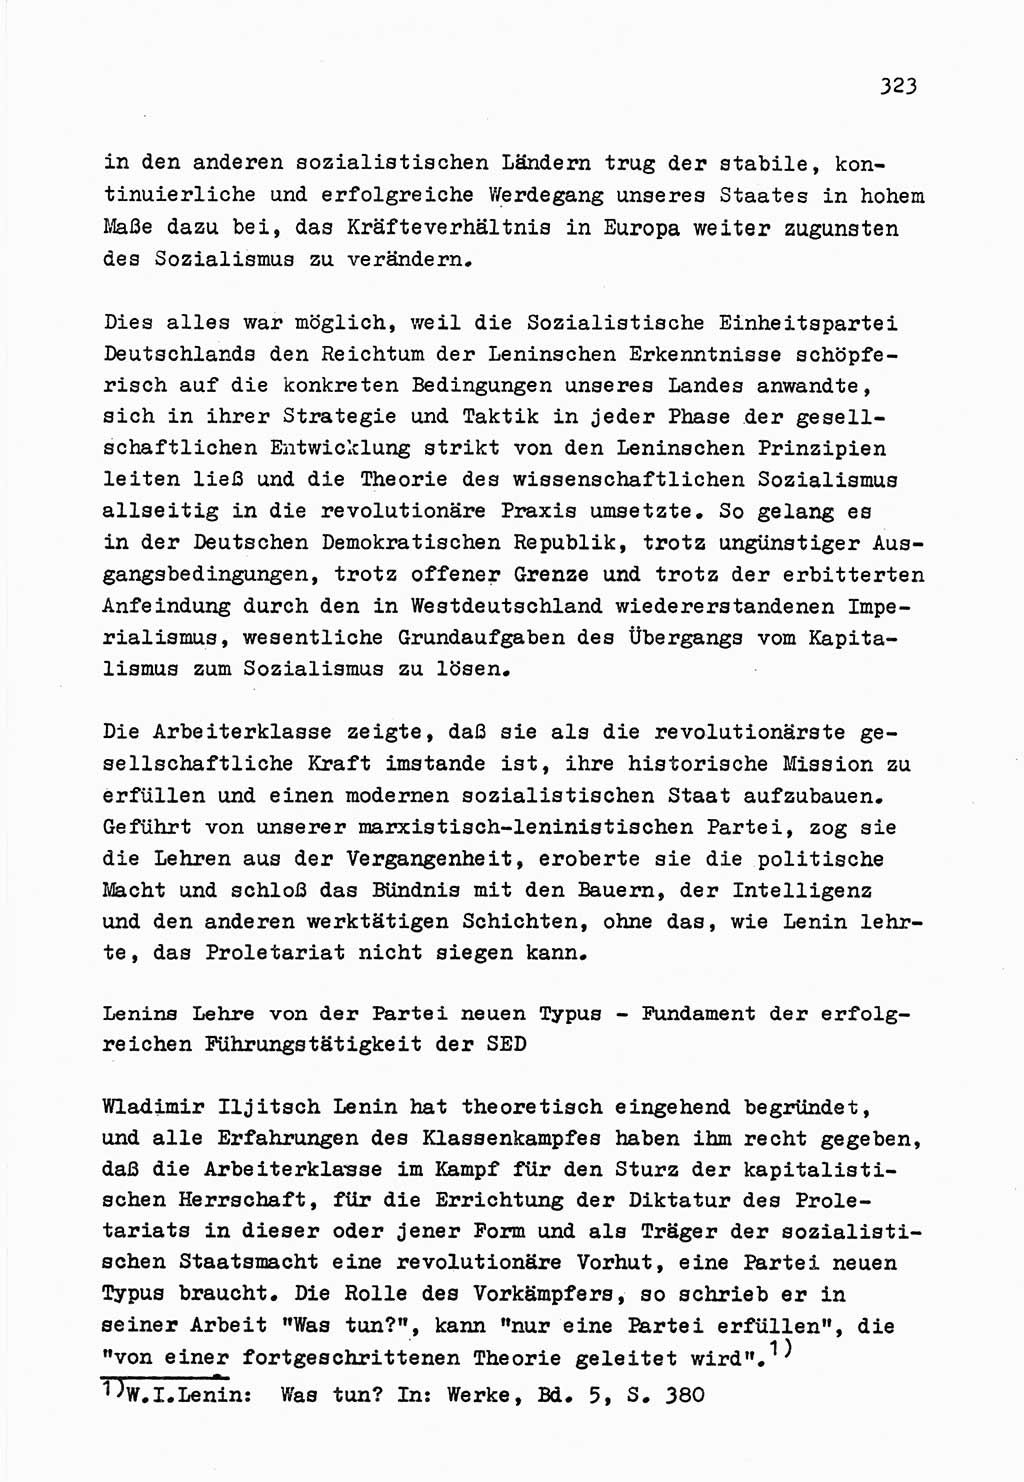 Zu Fragen der Parteiarbeit [Sozialistische Einheitspartei Deutschlands (SED) Deutsche Demokratische Republik (DDR)] 1979, Seite 323 (Fr. PA SED DDR 1979, S. 323)